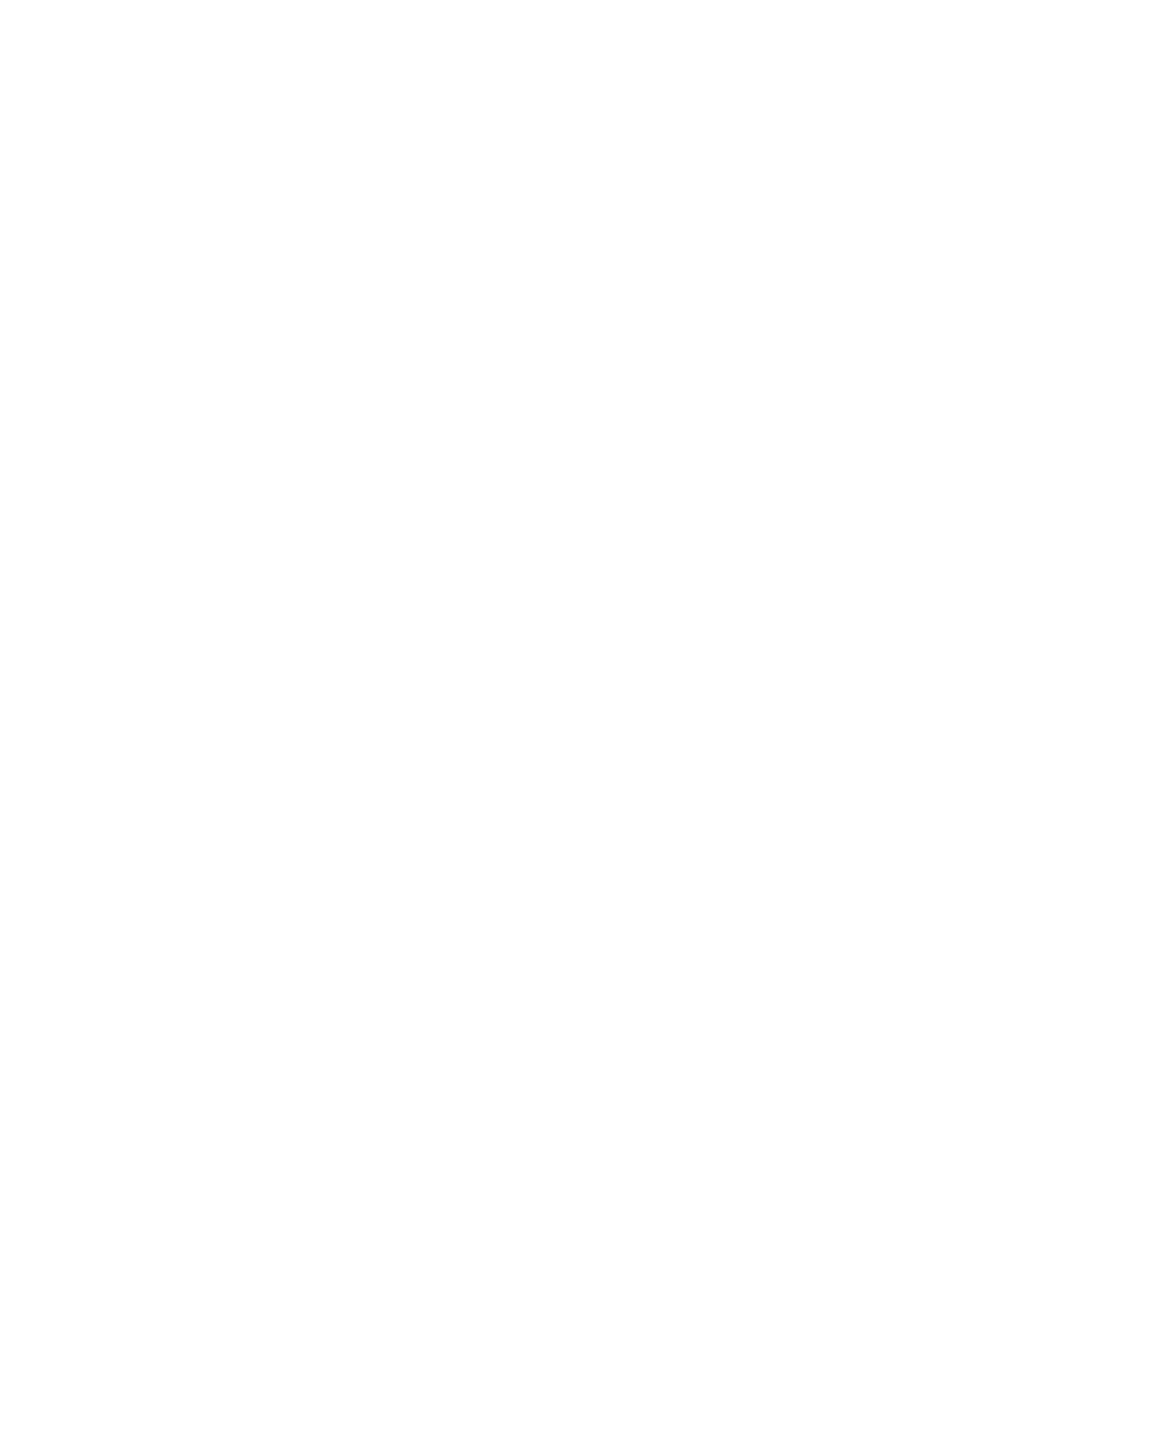 Terveystalo logo pour fonds sombres (PNG transparent)